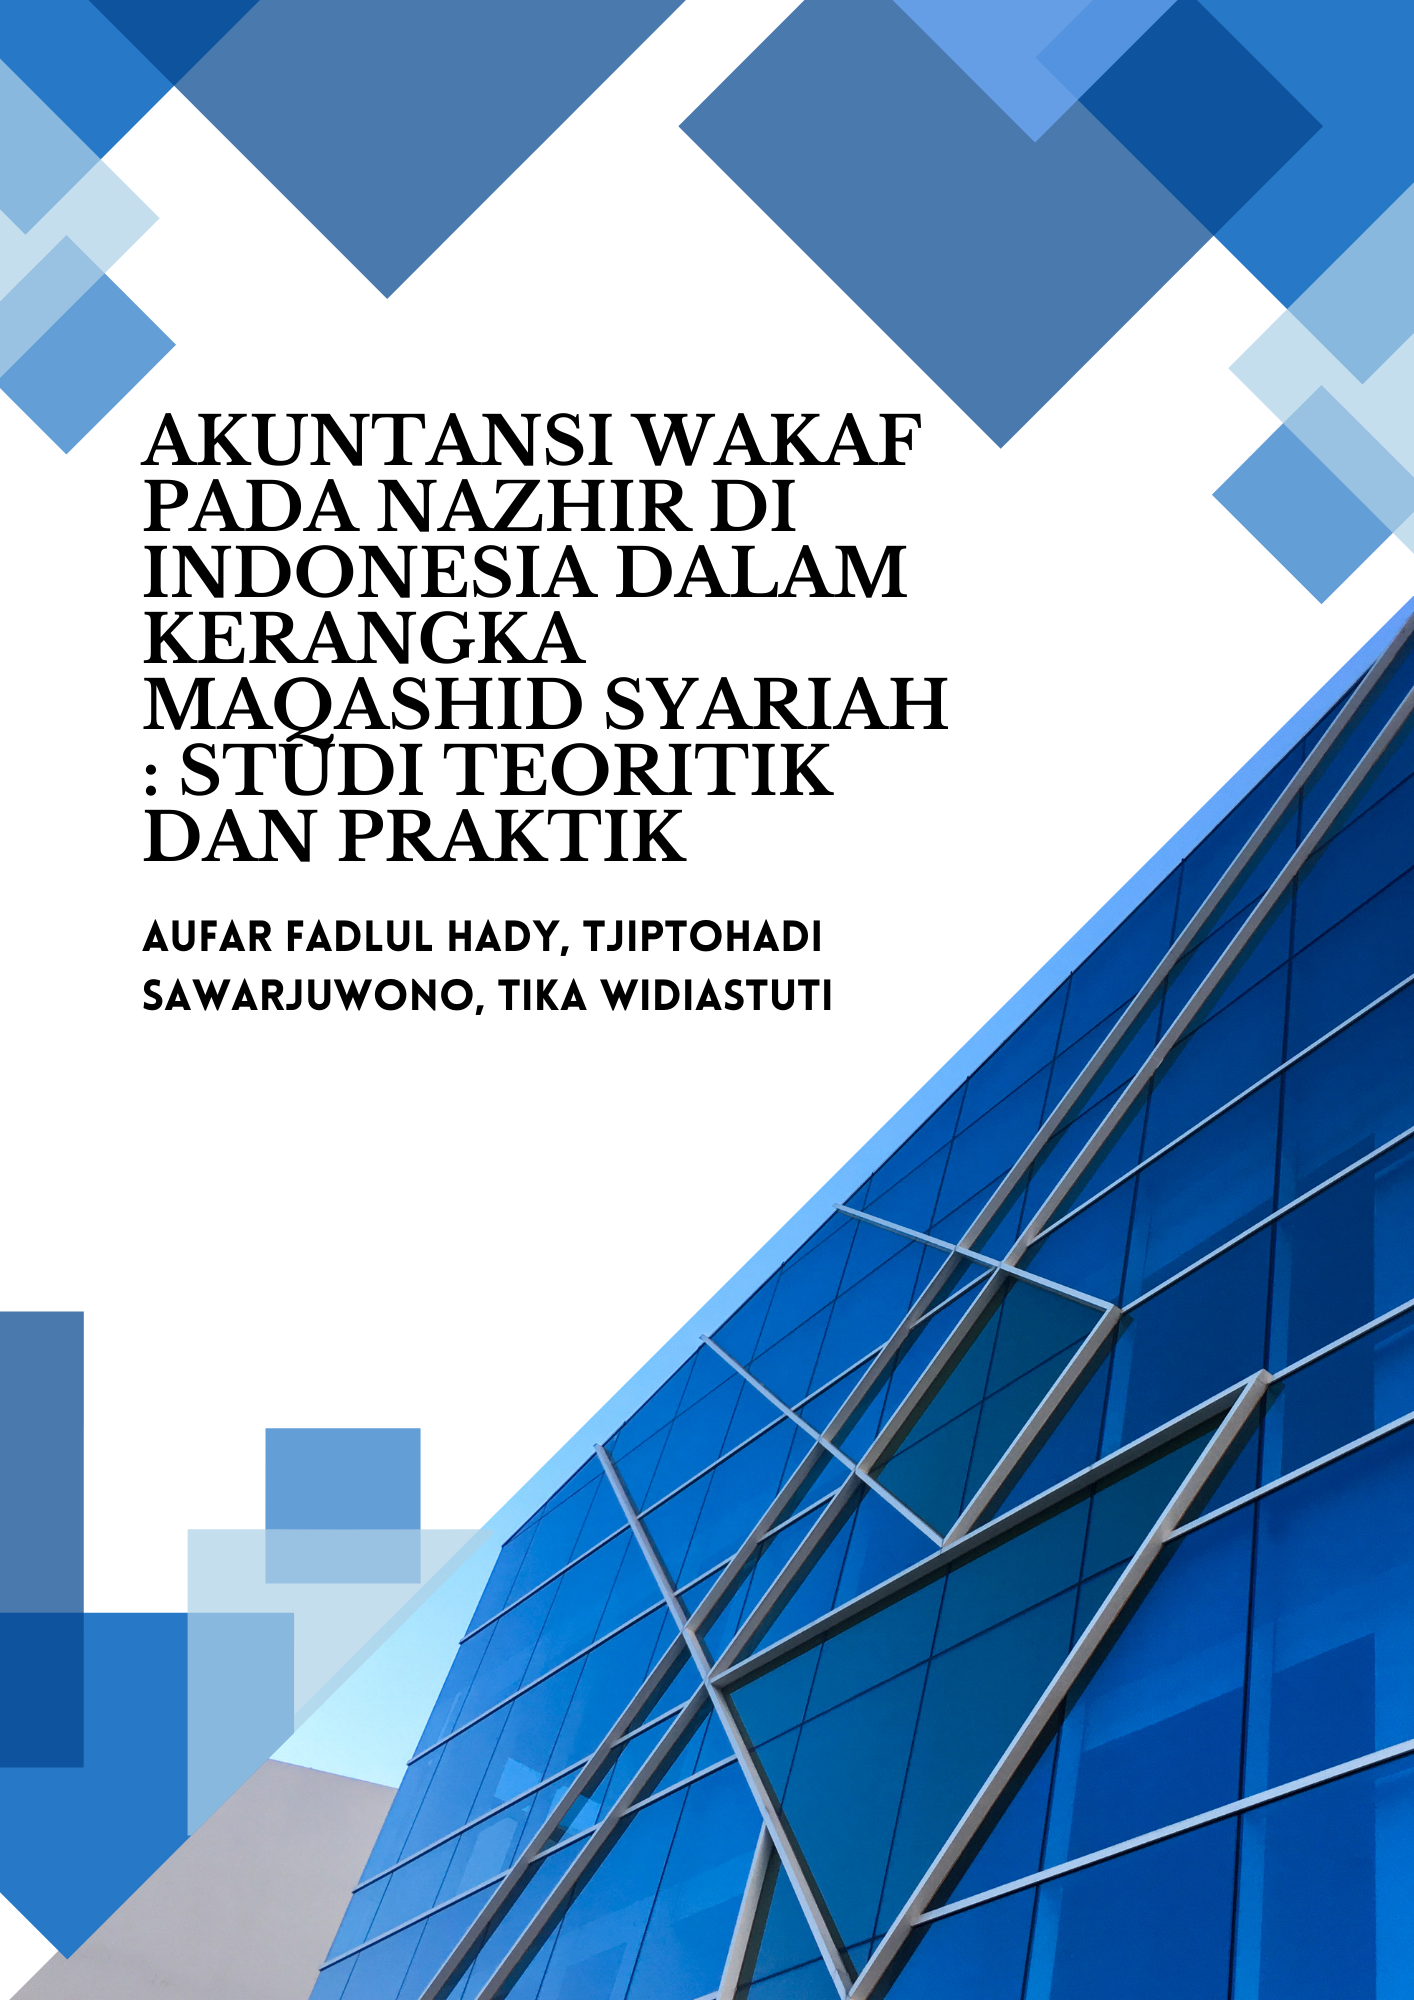 Akuntansi Wakaf Pada Nazhir Di Indonesia Dalam Kerangka Maqashid Syariah Studi Teoritik Dan Praktik